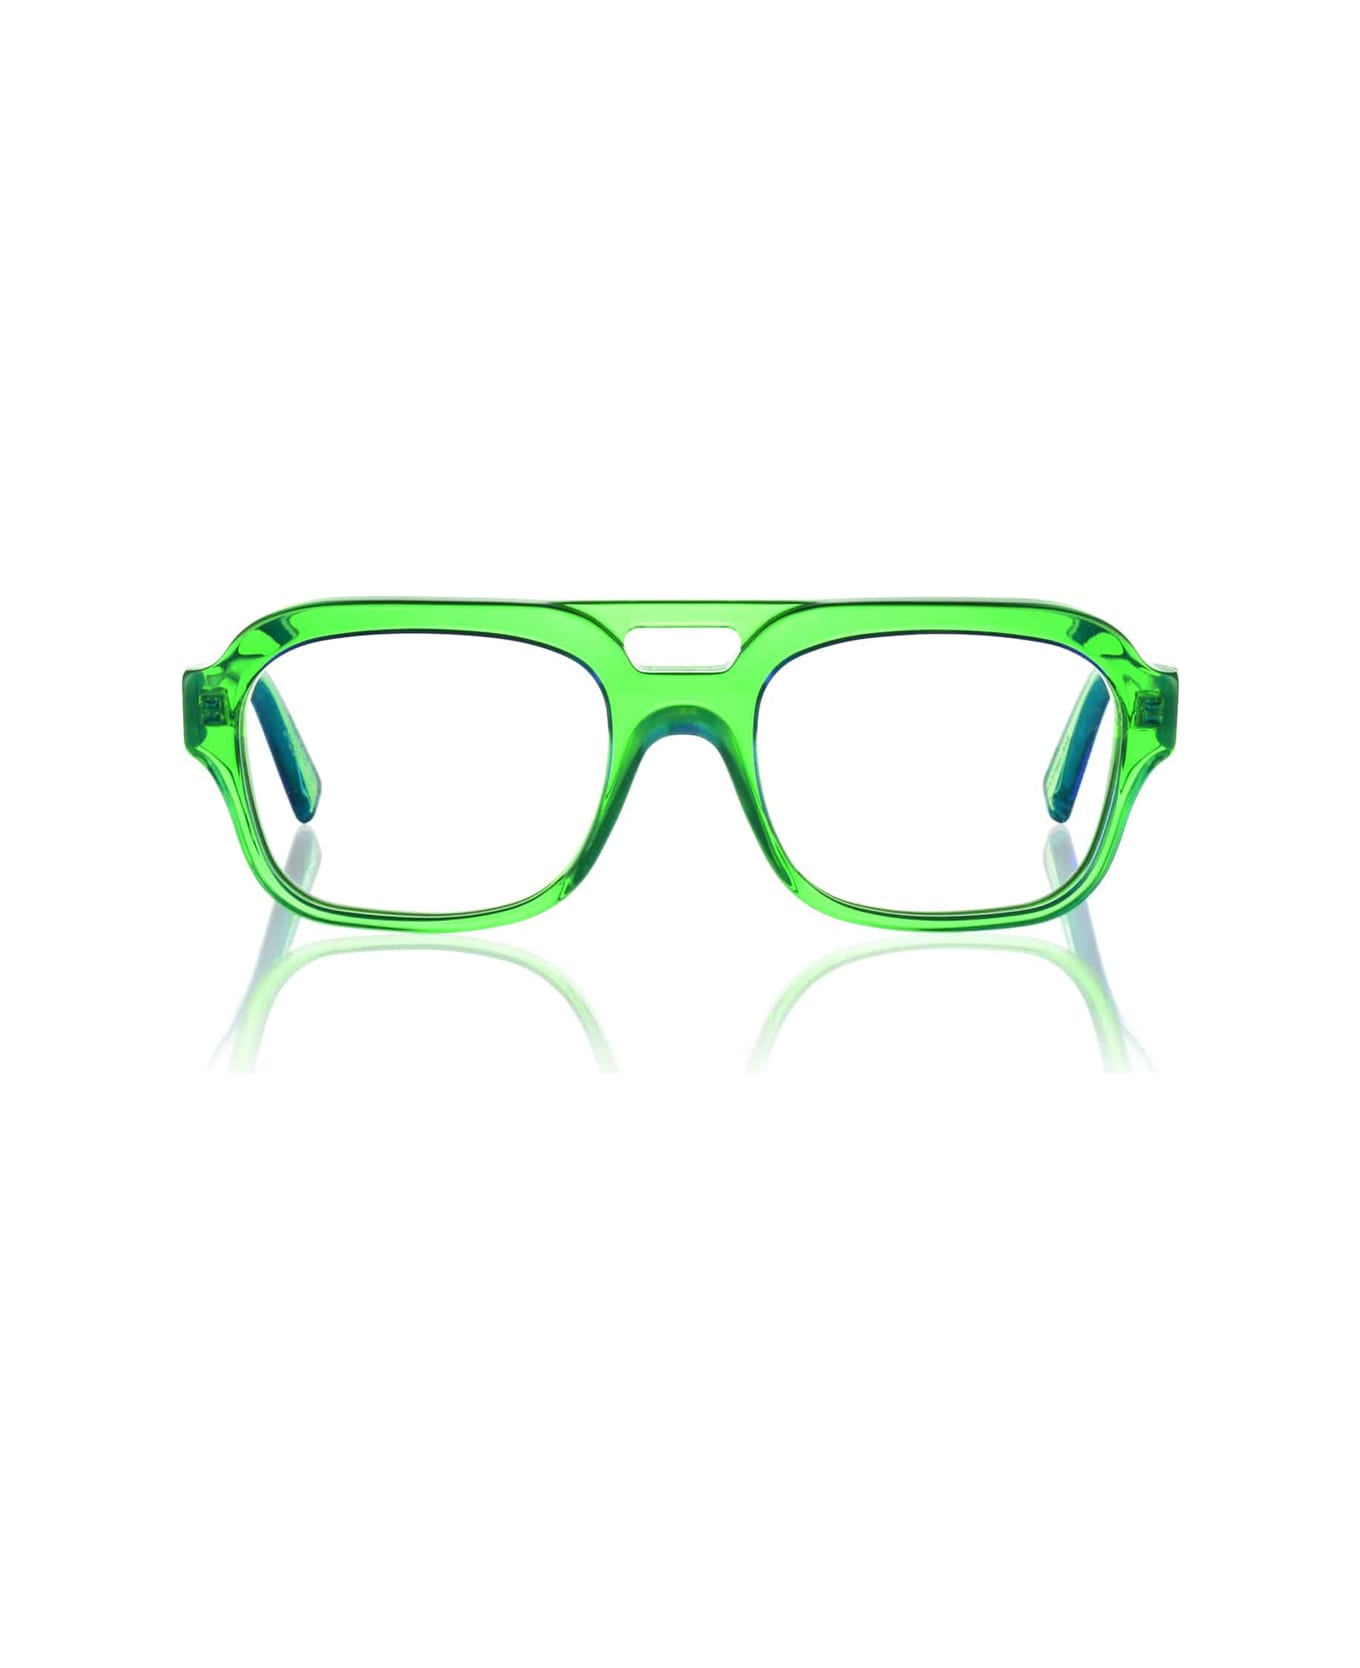 Kirk & Kirk Finn K18 Apple Glasses - Verde